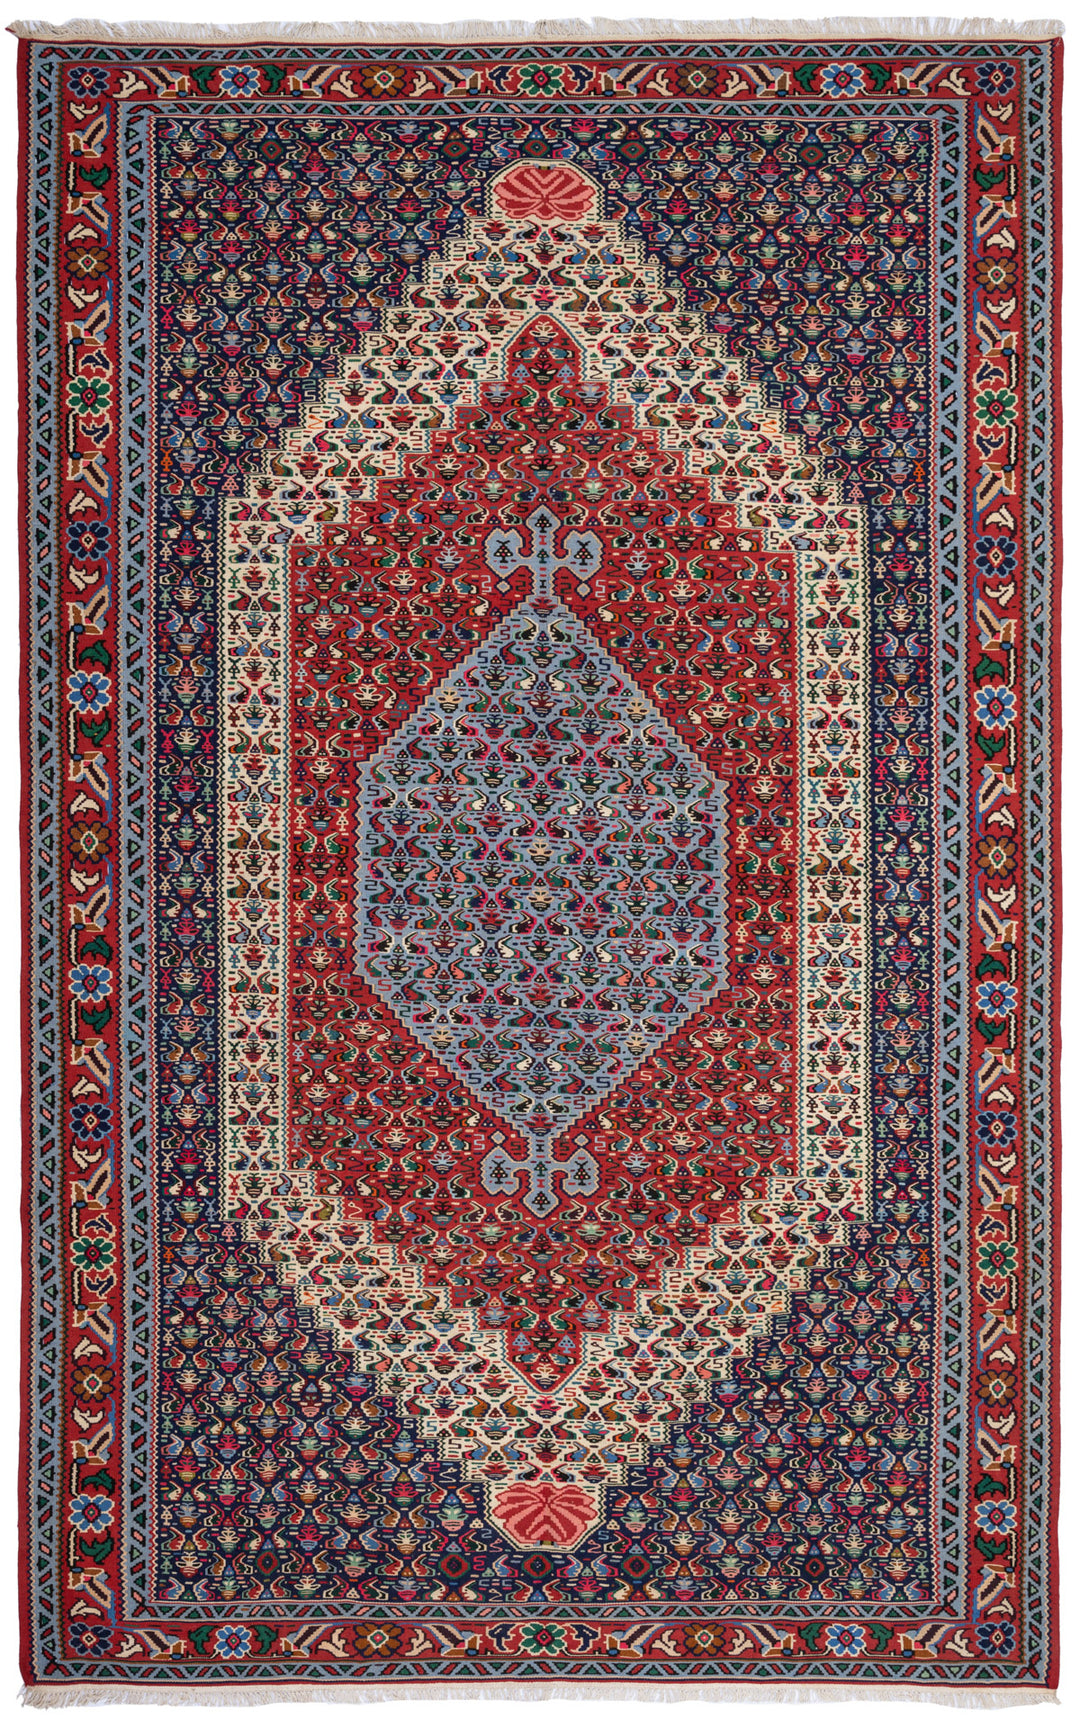 DENYW Persian Senneh Kilim 320x203cm